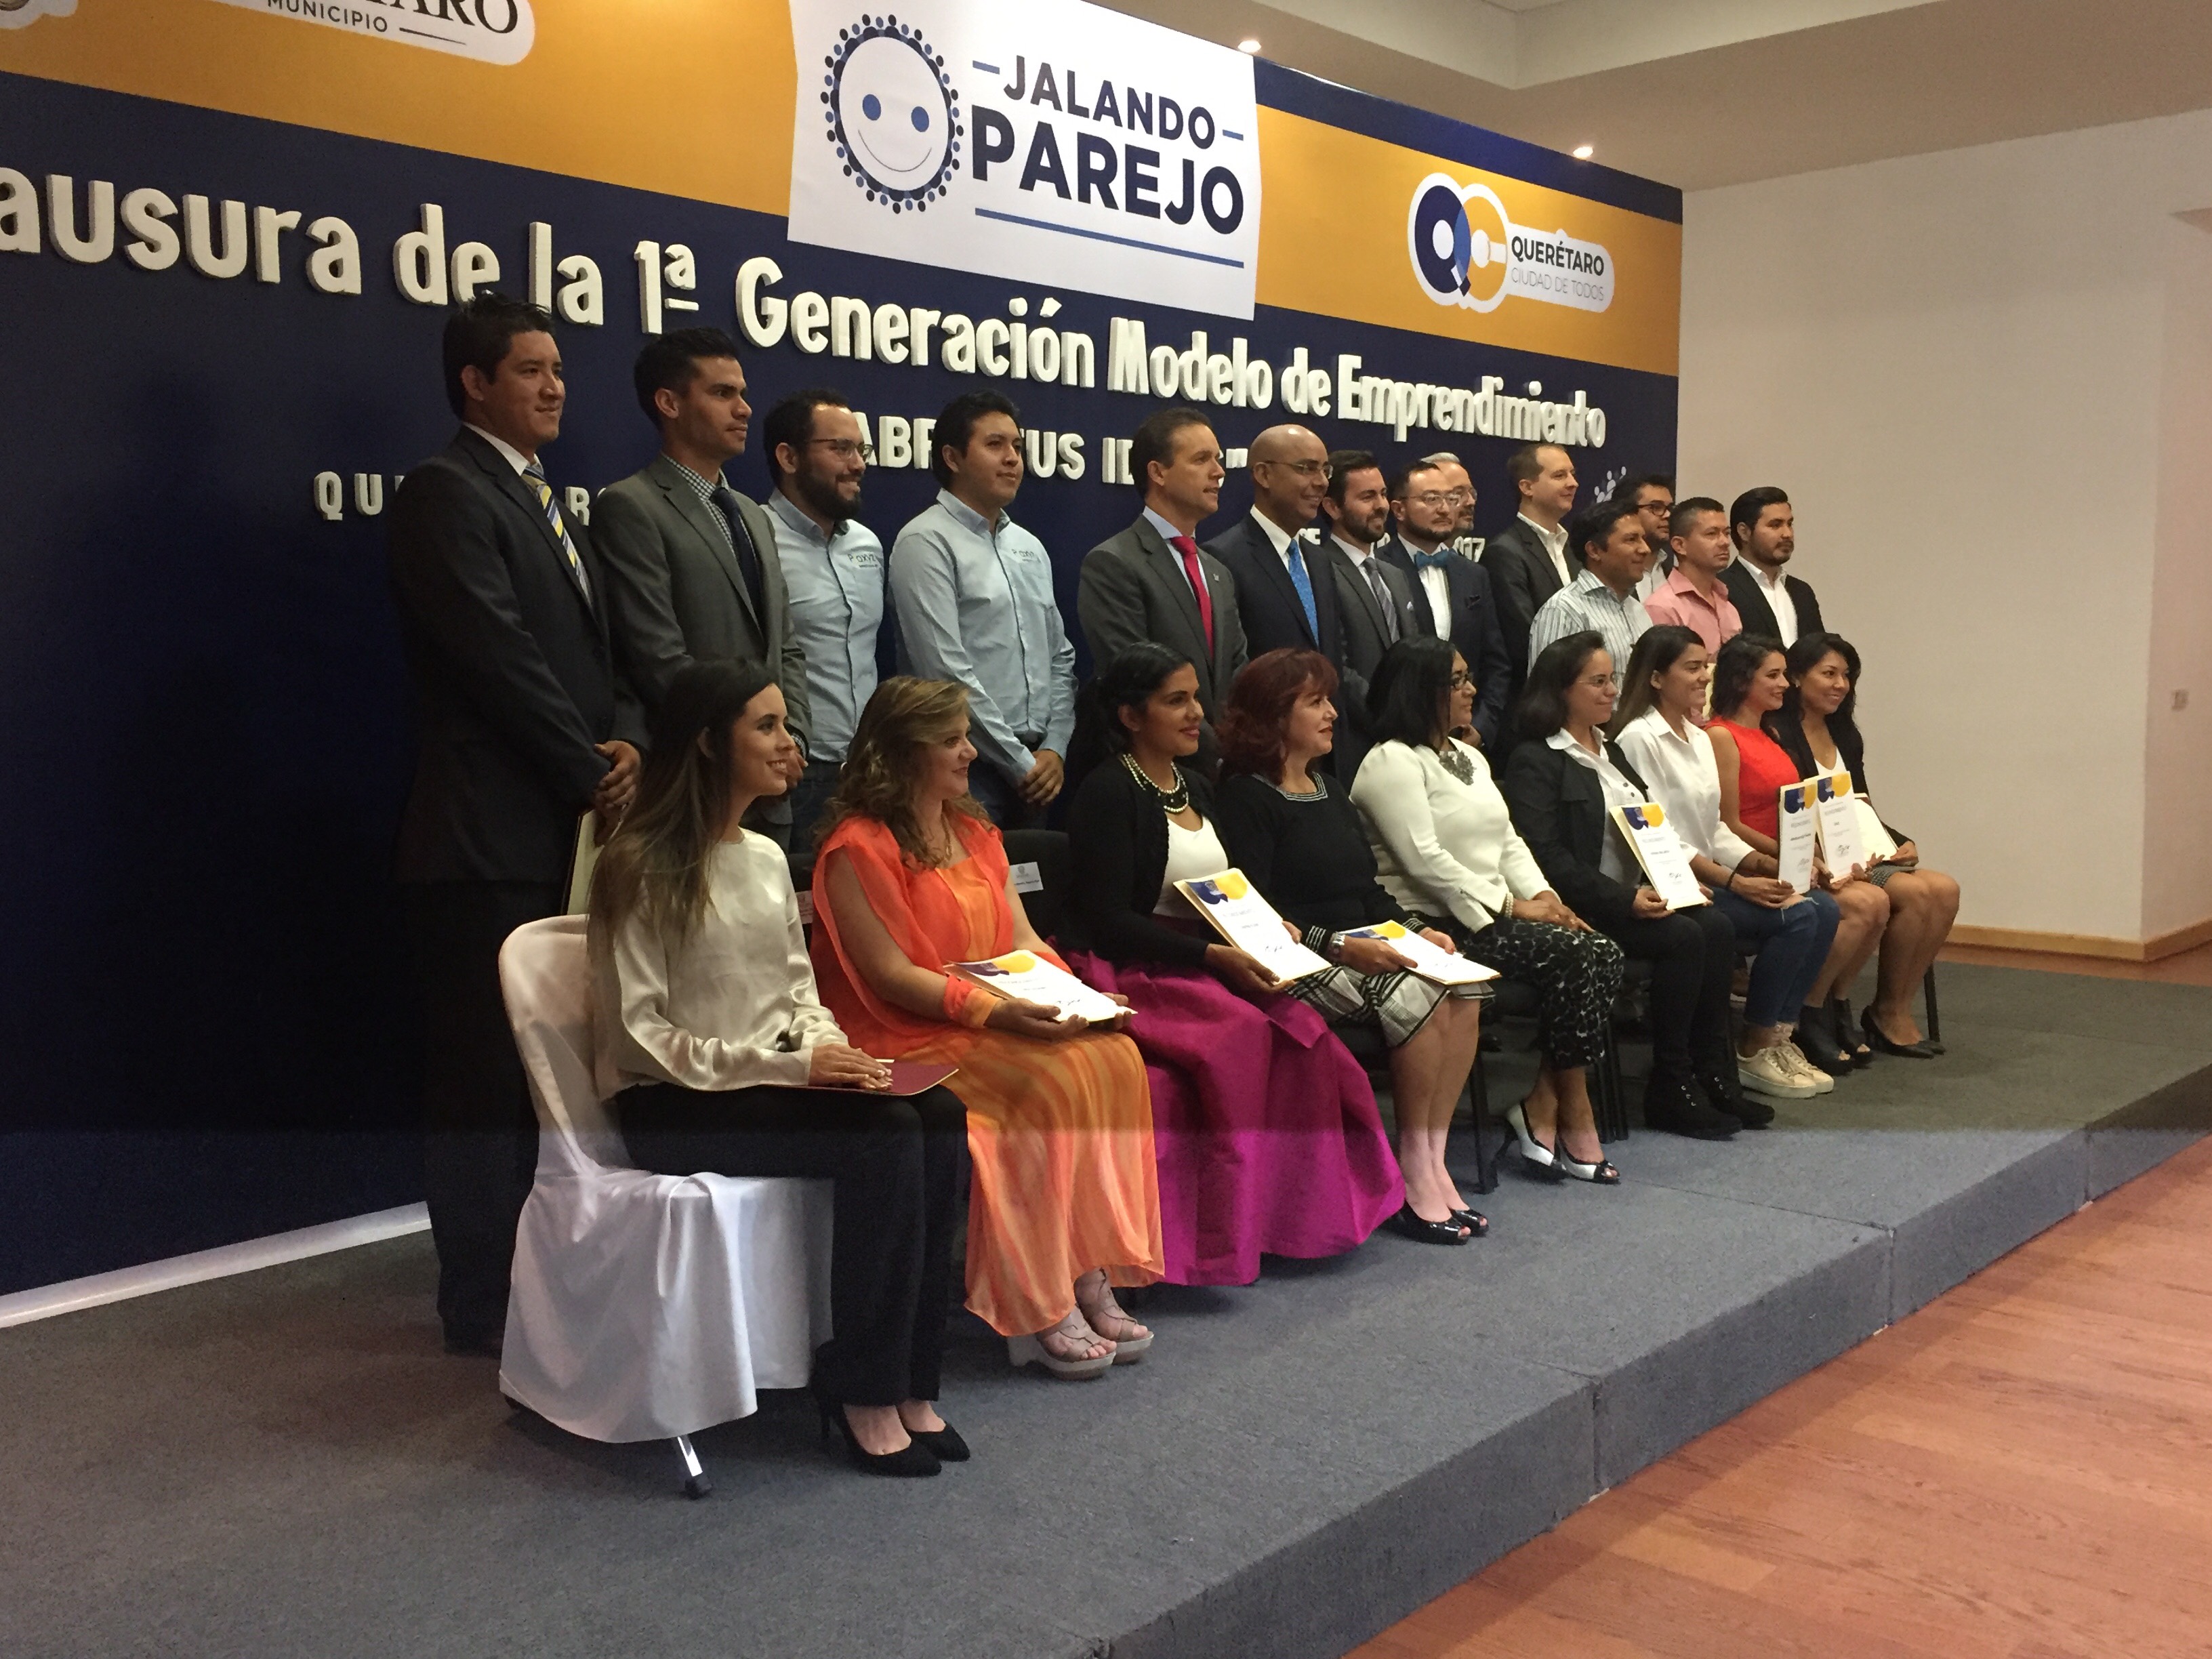  Universidad Anáhuac y municipio de Querétaro clausuran primera generación del modelo de emprendimiento “Abre tus ideas”